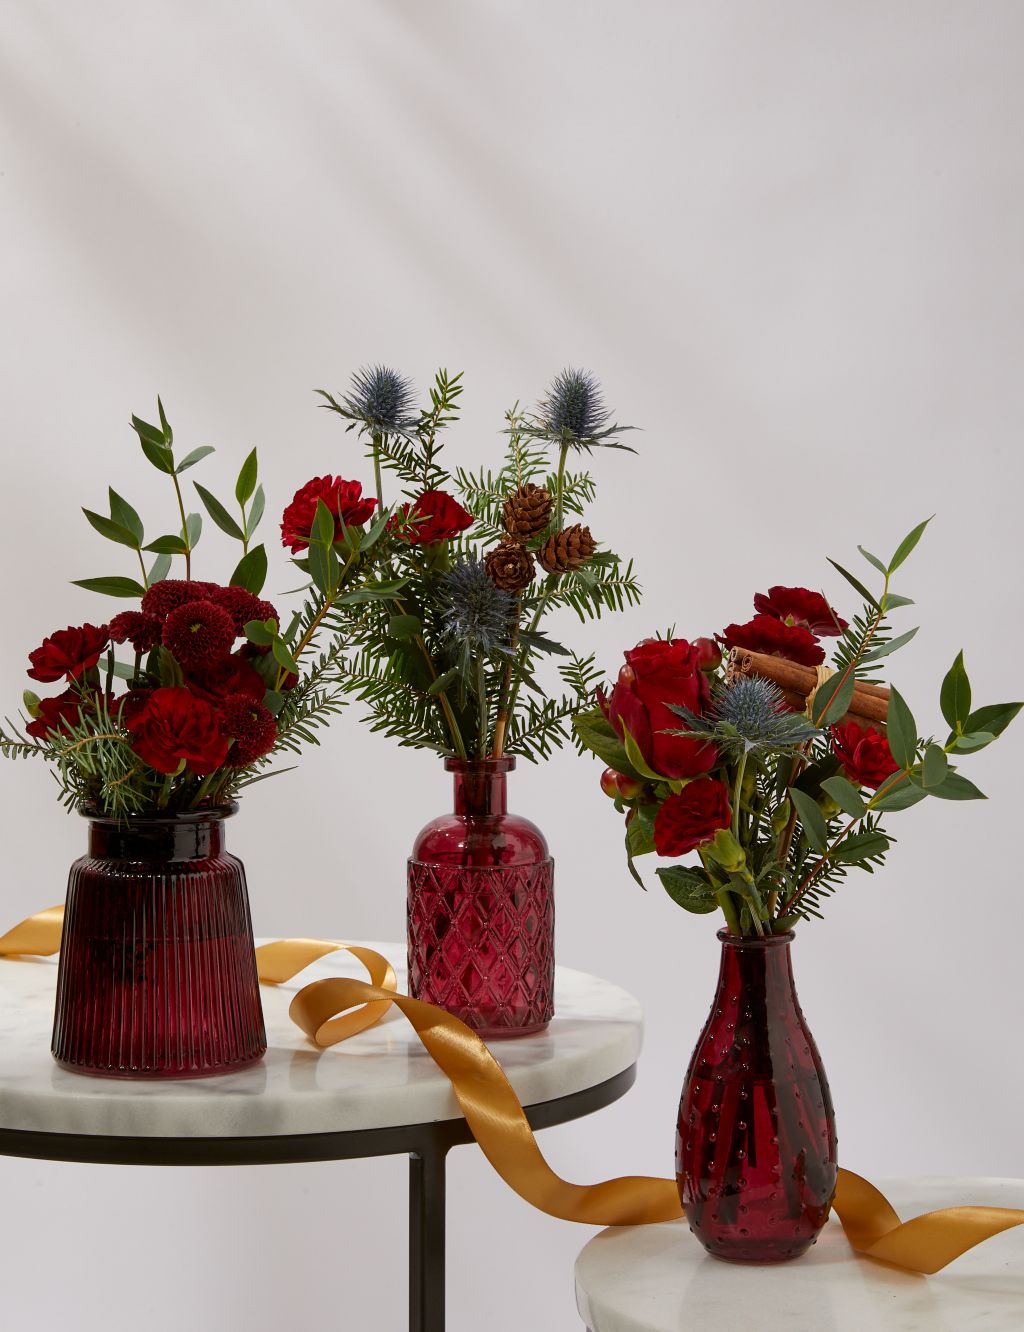 Festive Posies in Scarlet Bud Vases